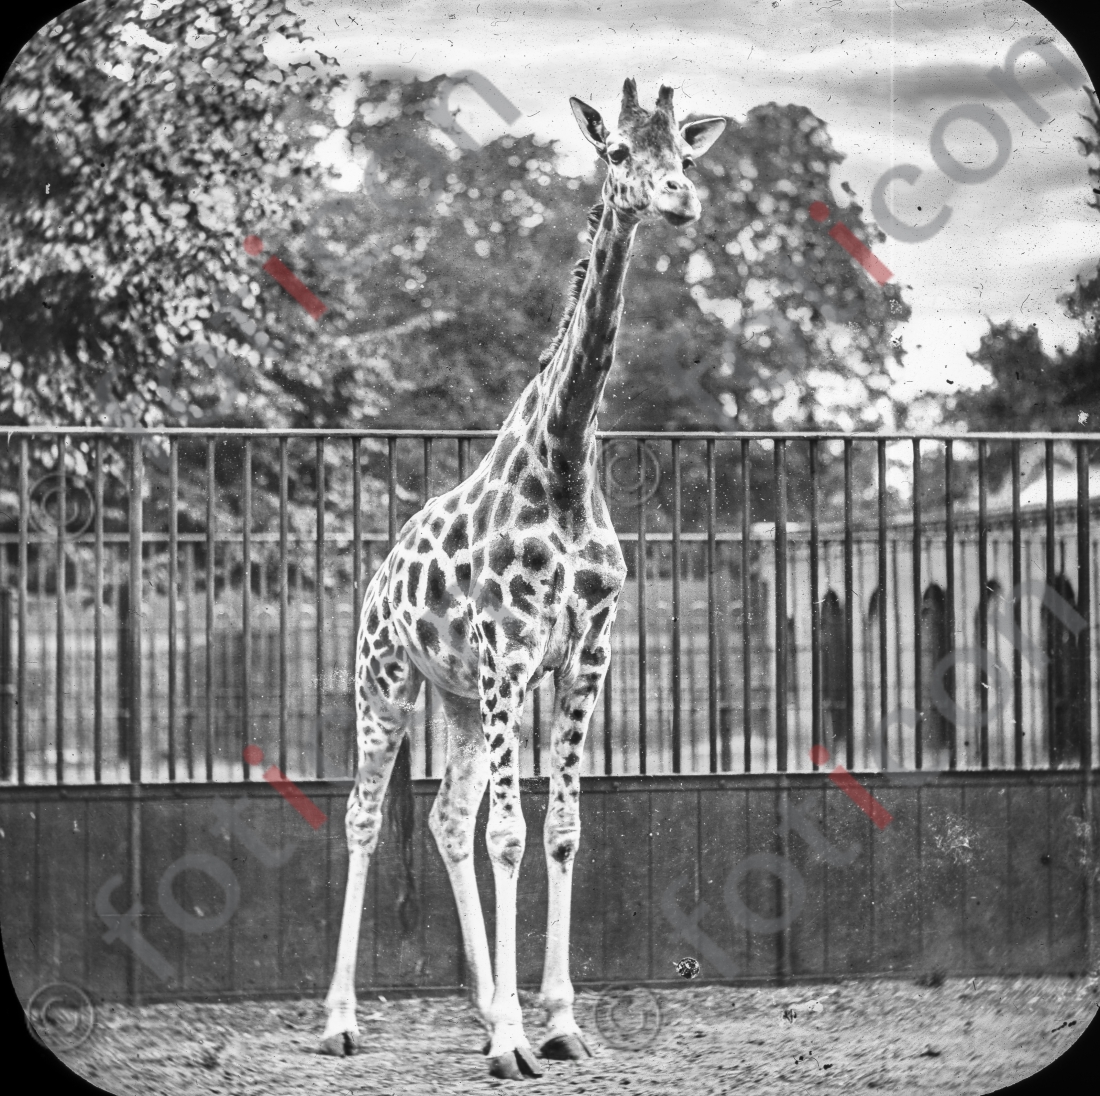 Giraffe | Giraffe - Foto foticon-simon-167-037-sw.jpg | foticon.de - Bilddatenbank für Motive aus Geschichte und Kultur